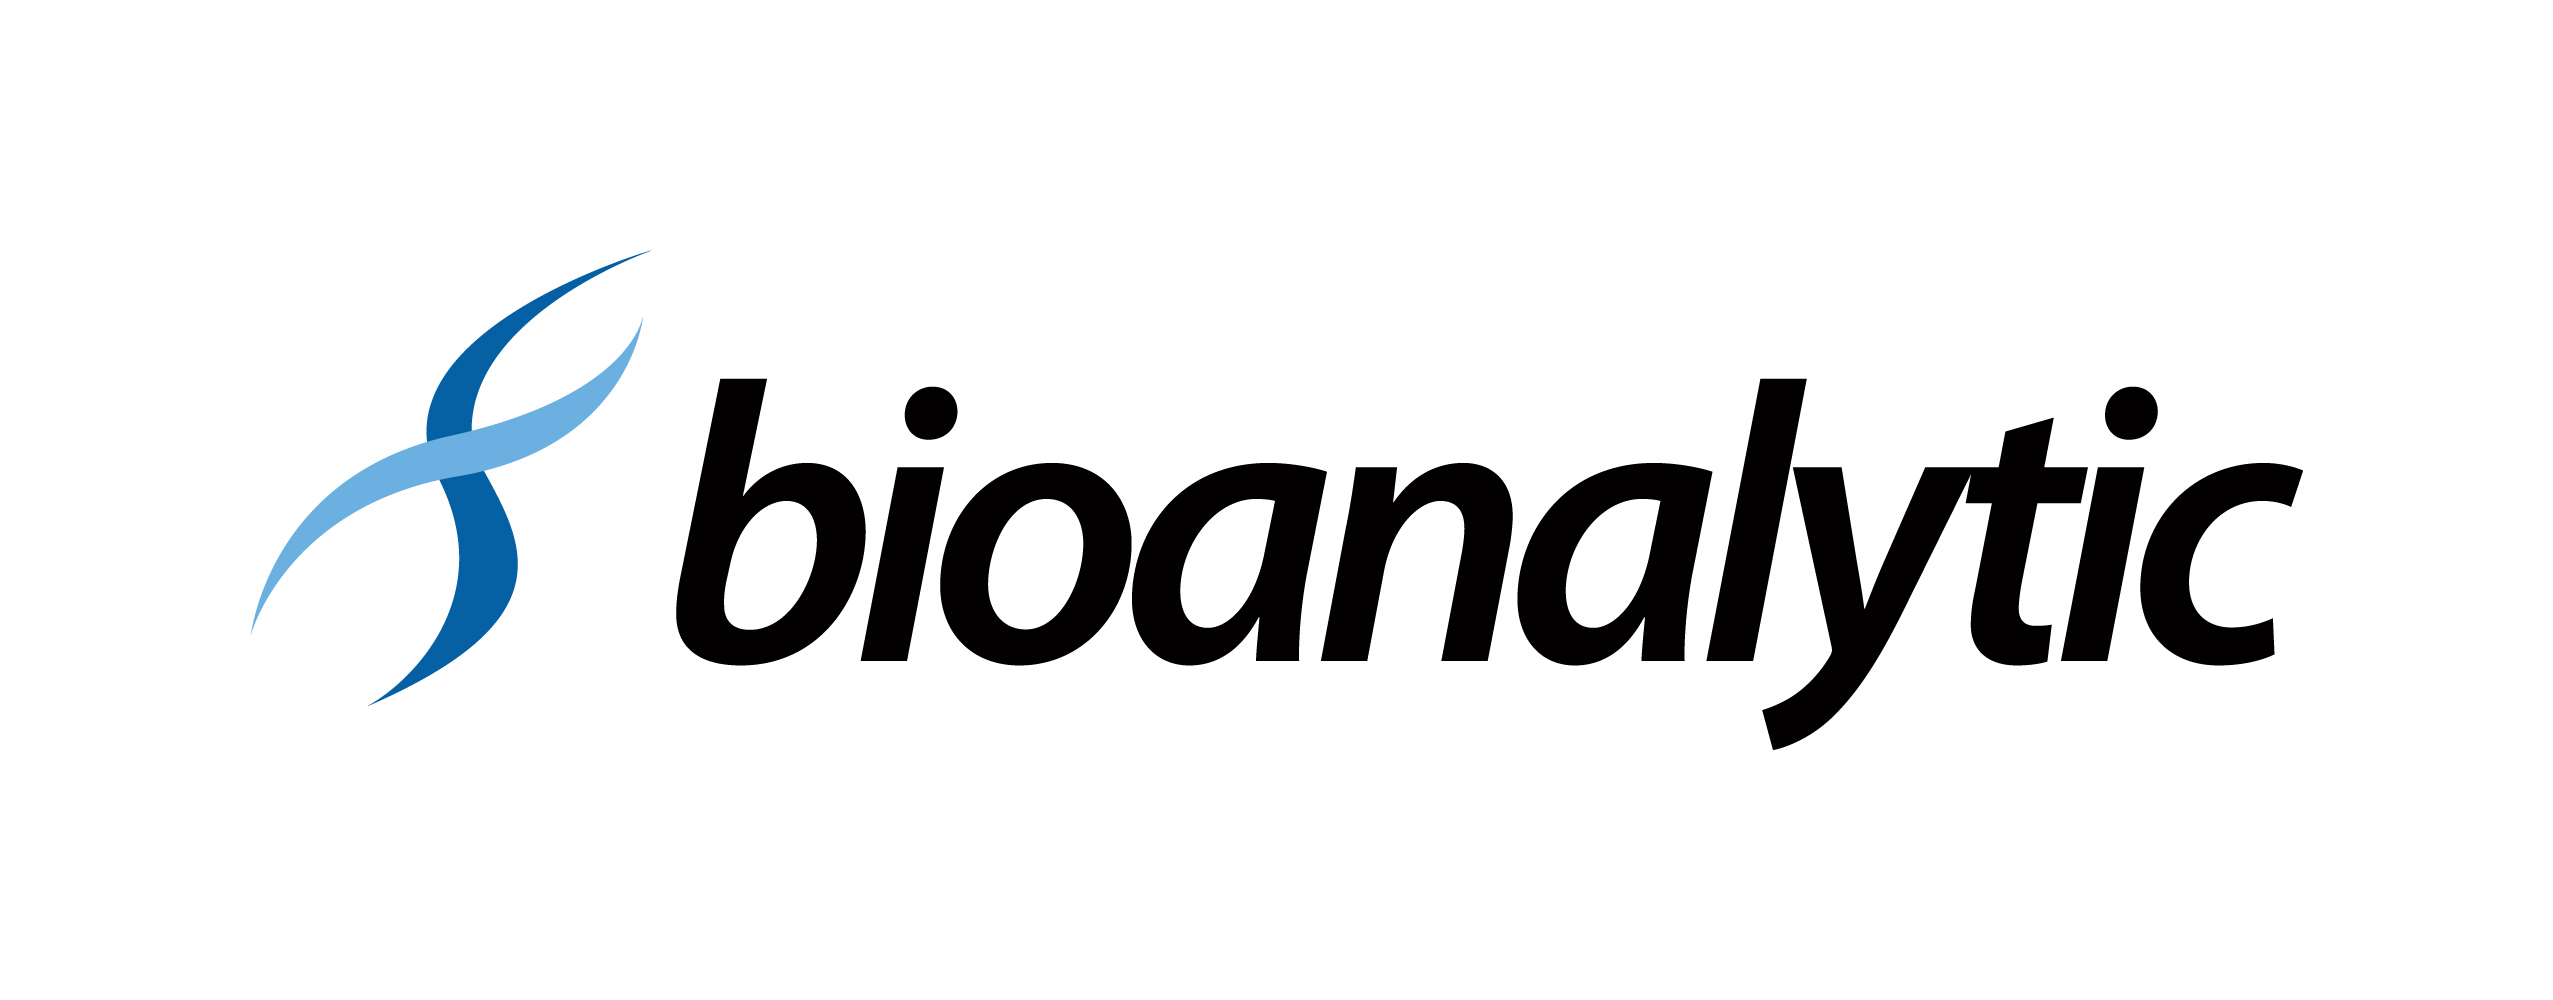 bioanalytic logo BIG